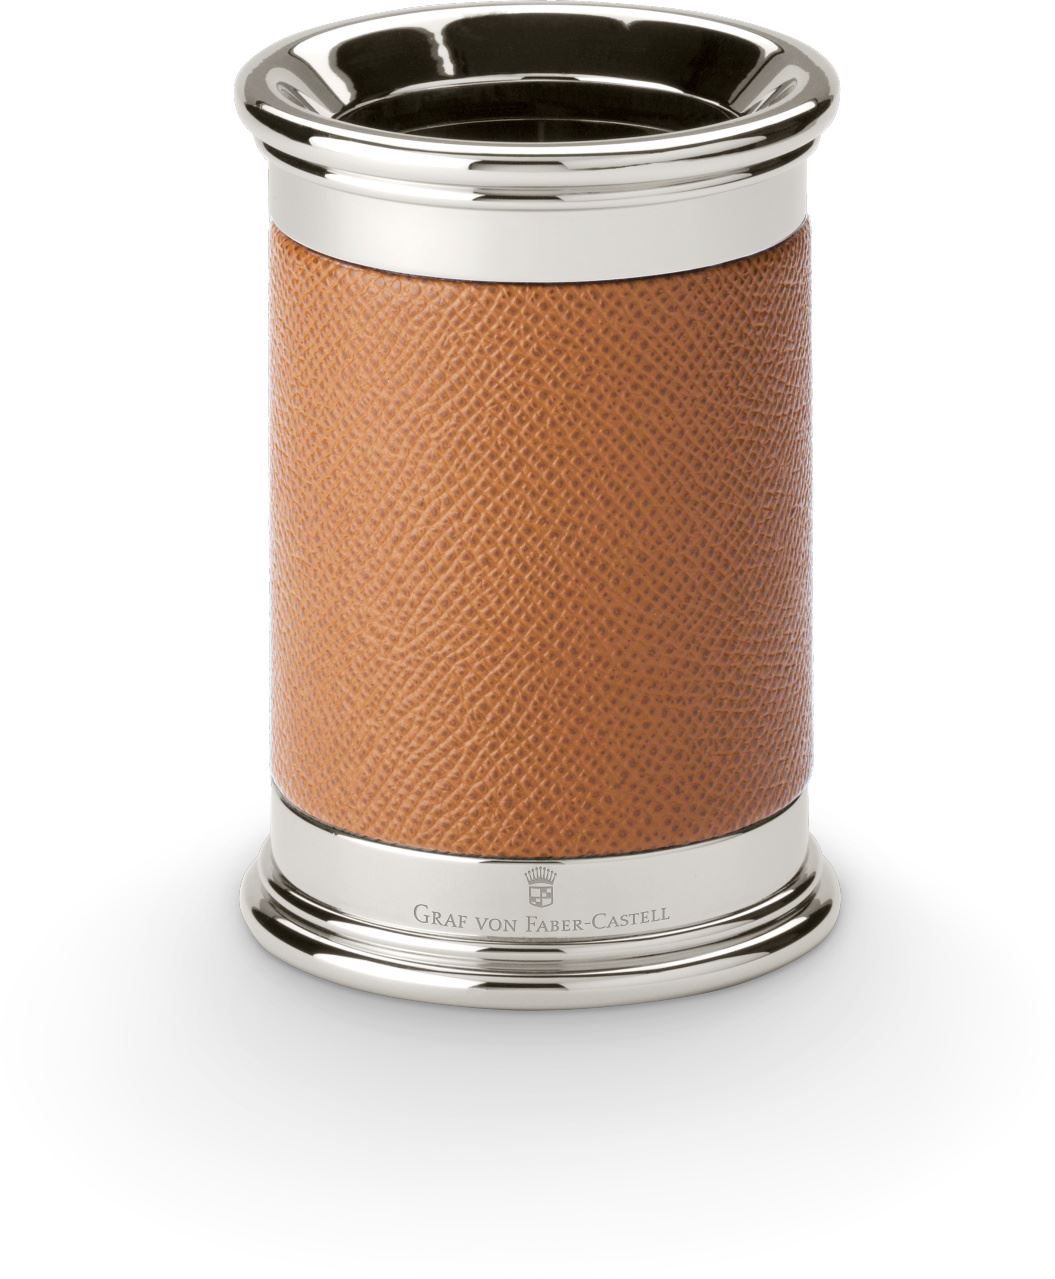 Graf-von-Faber-Castell - Pot à crayons cuir grainé, cognac